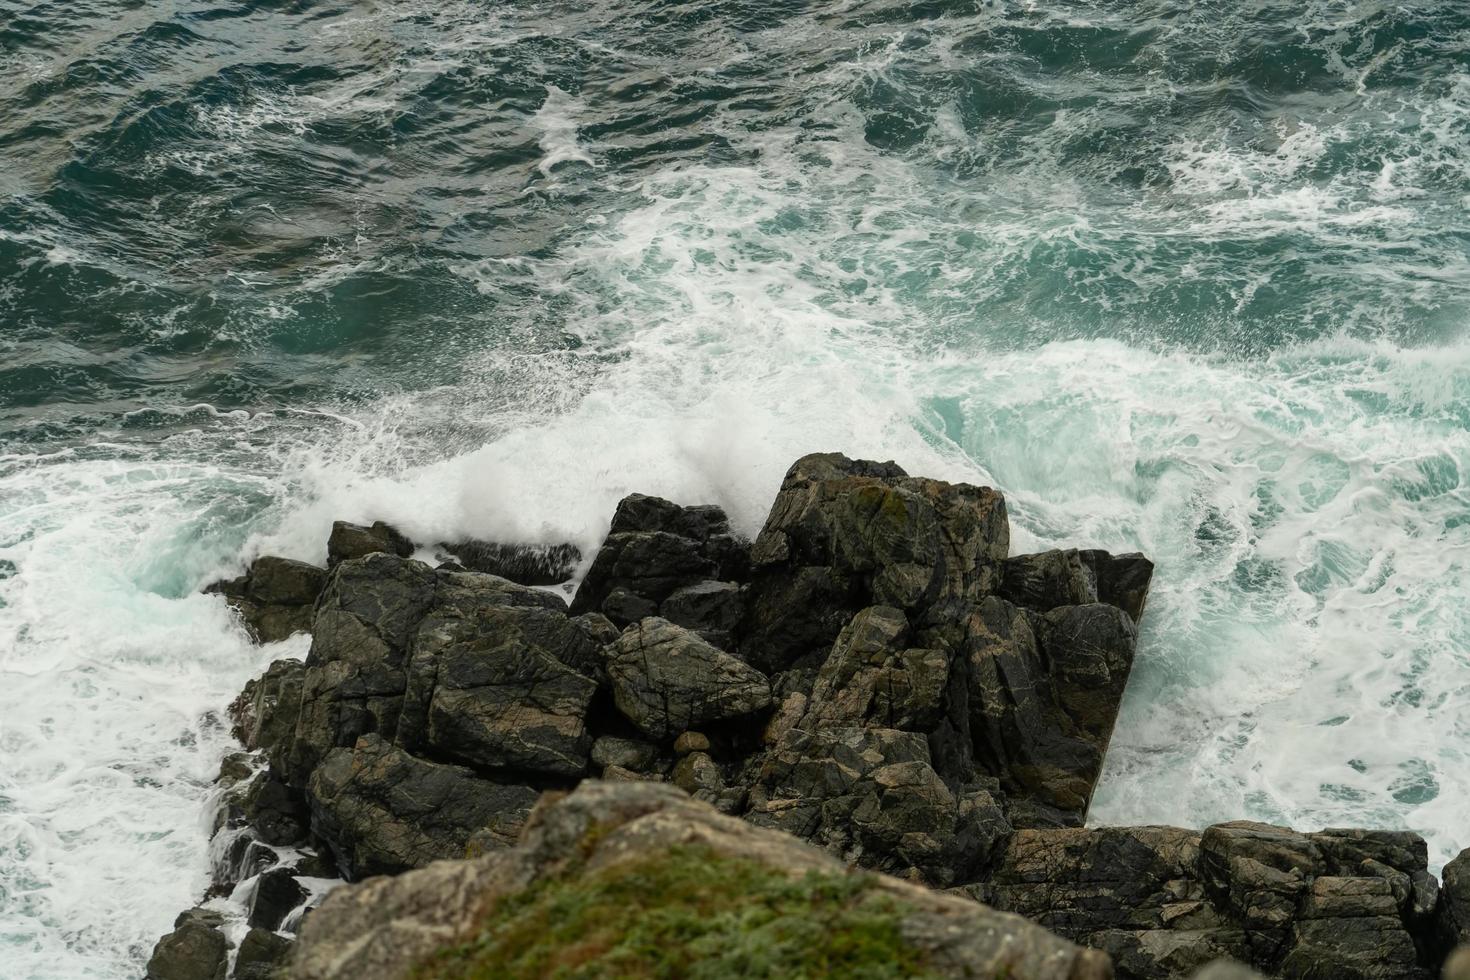 Seascape with waves crashing on rocks photo